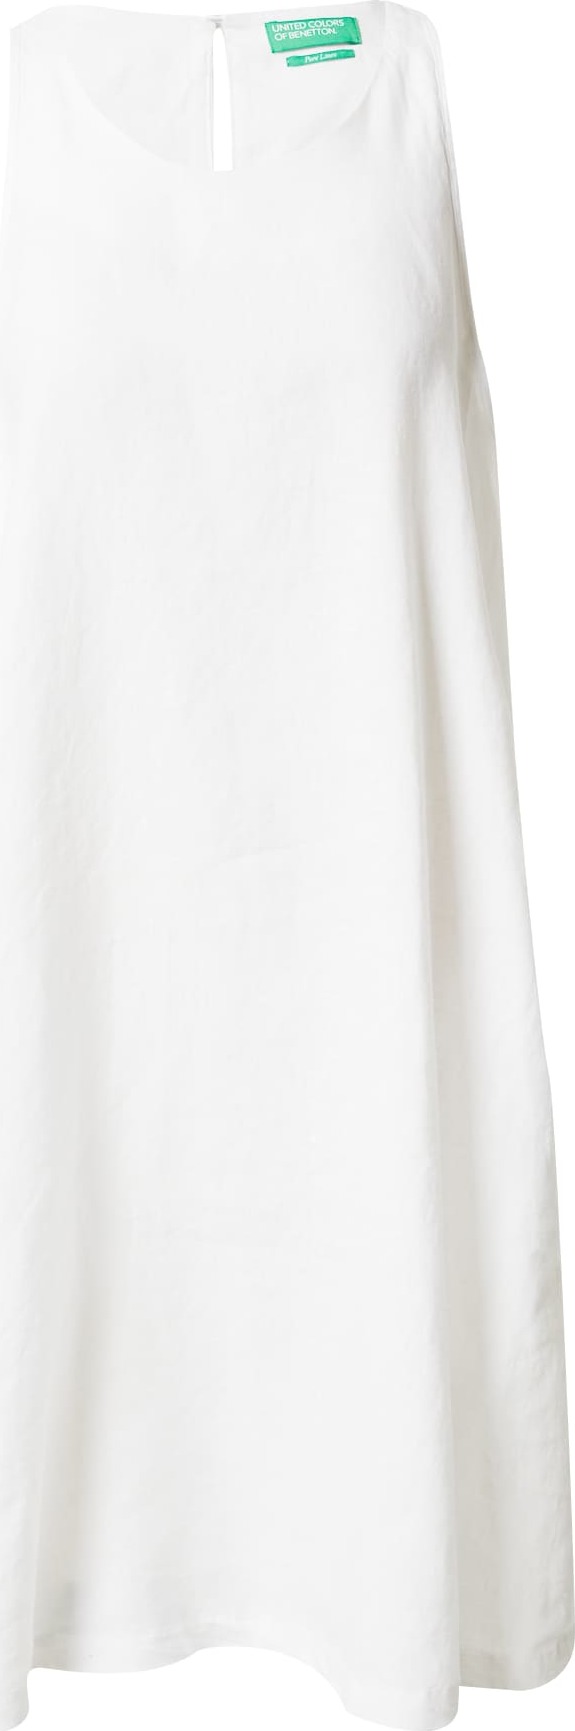 UNITED COLORS OF BENETTON Letní šaty bílá